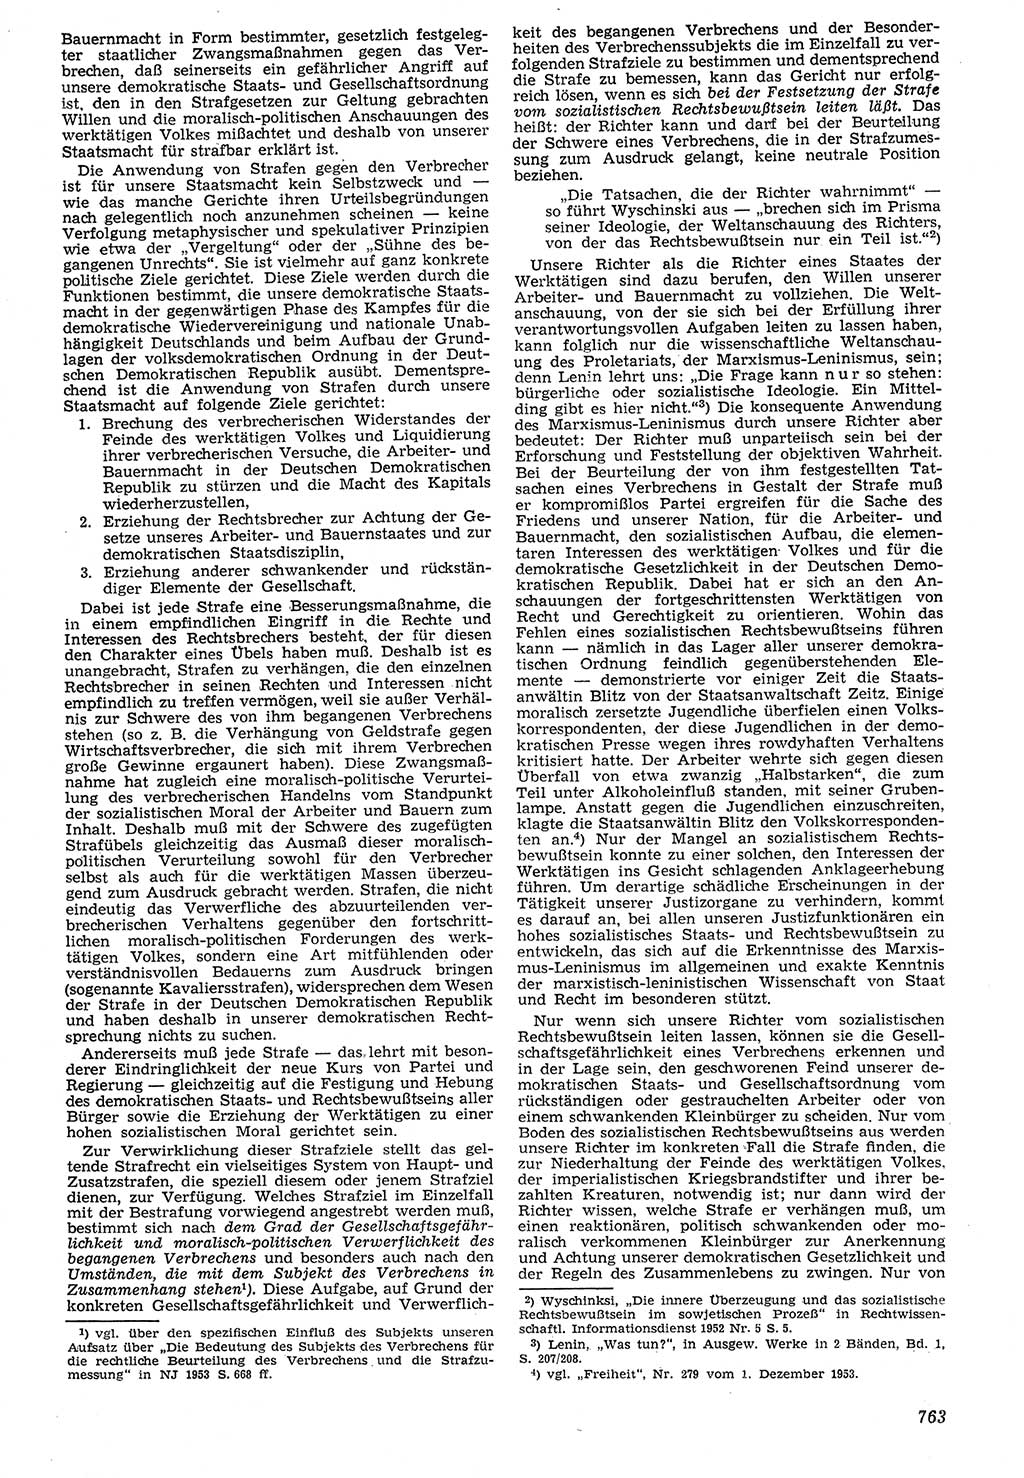 Neue Justiz (NJ), Zeitschrift für Recht und Rechtswissenschaft [Deutsche Demokratische Republik (DDR)], 7. Jahrgang 1953, Seite 763 (NJ DDR 1953, S. 763)